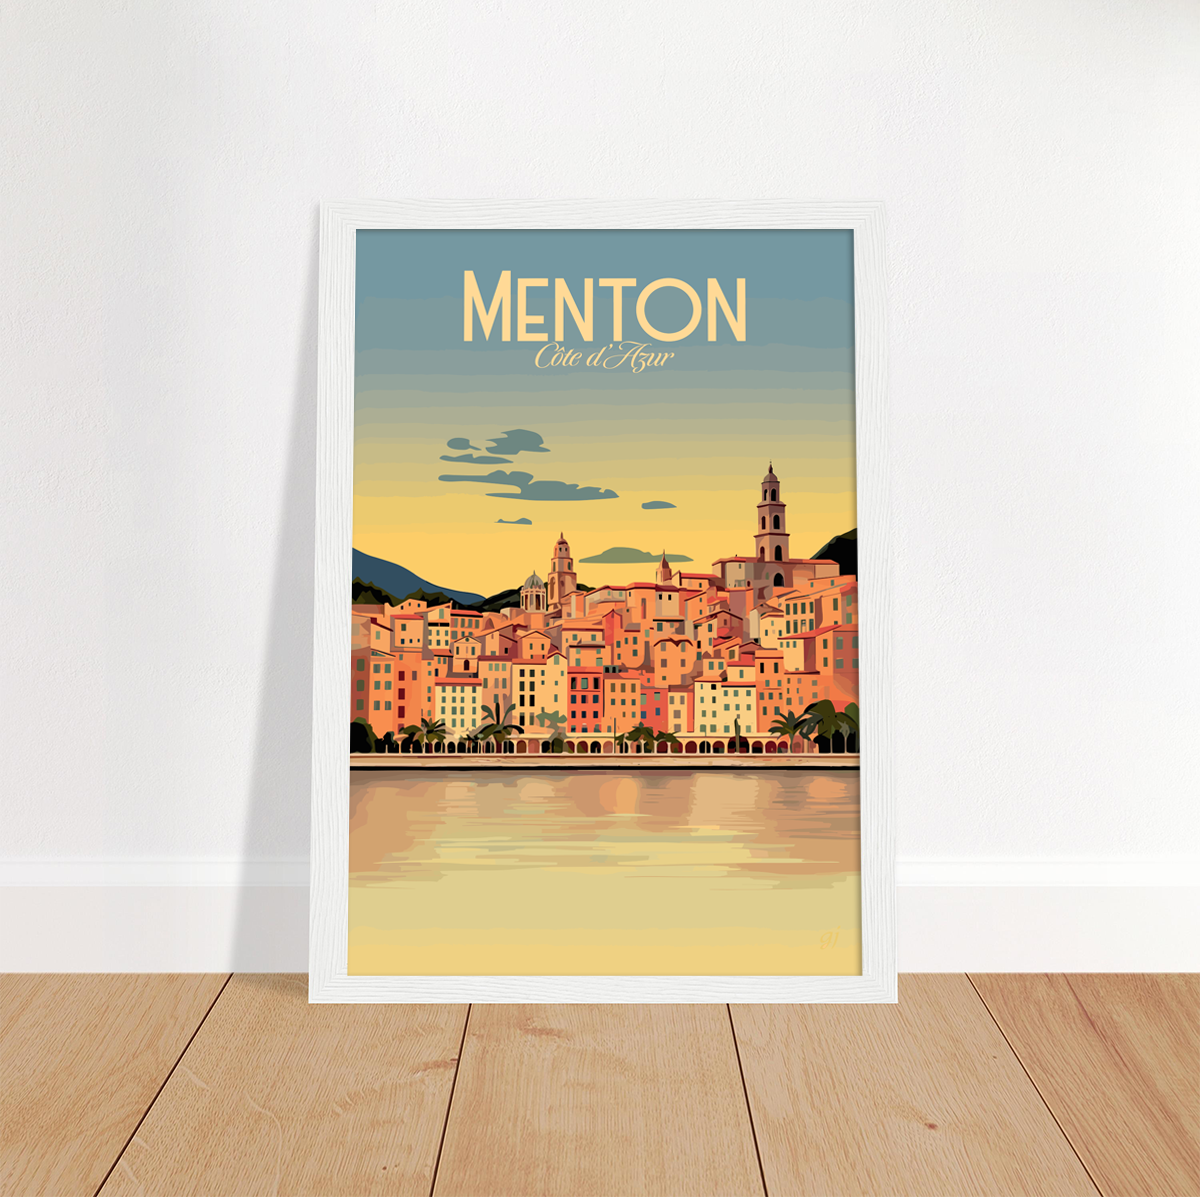 Menton poster by bon voyage design